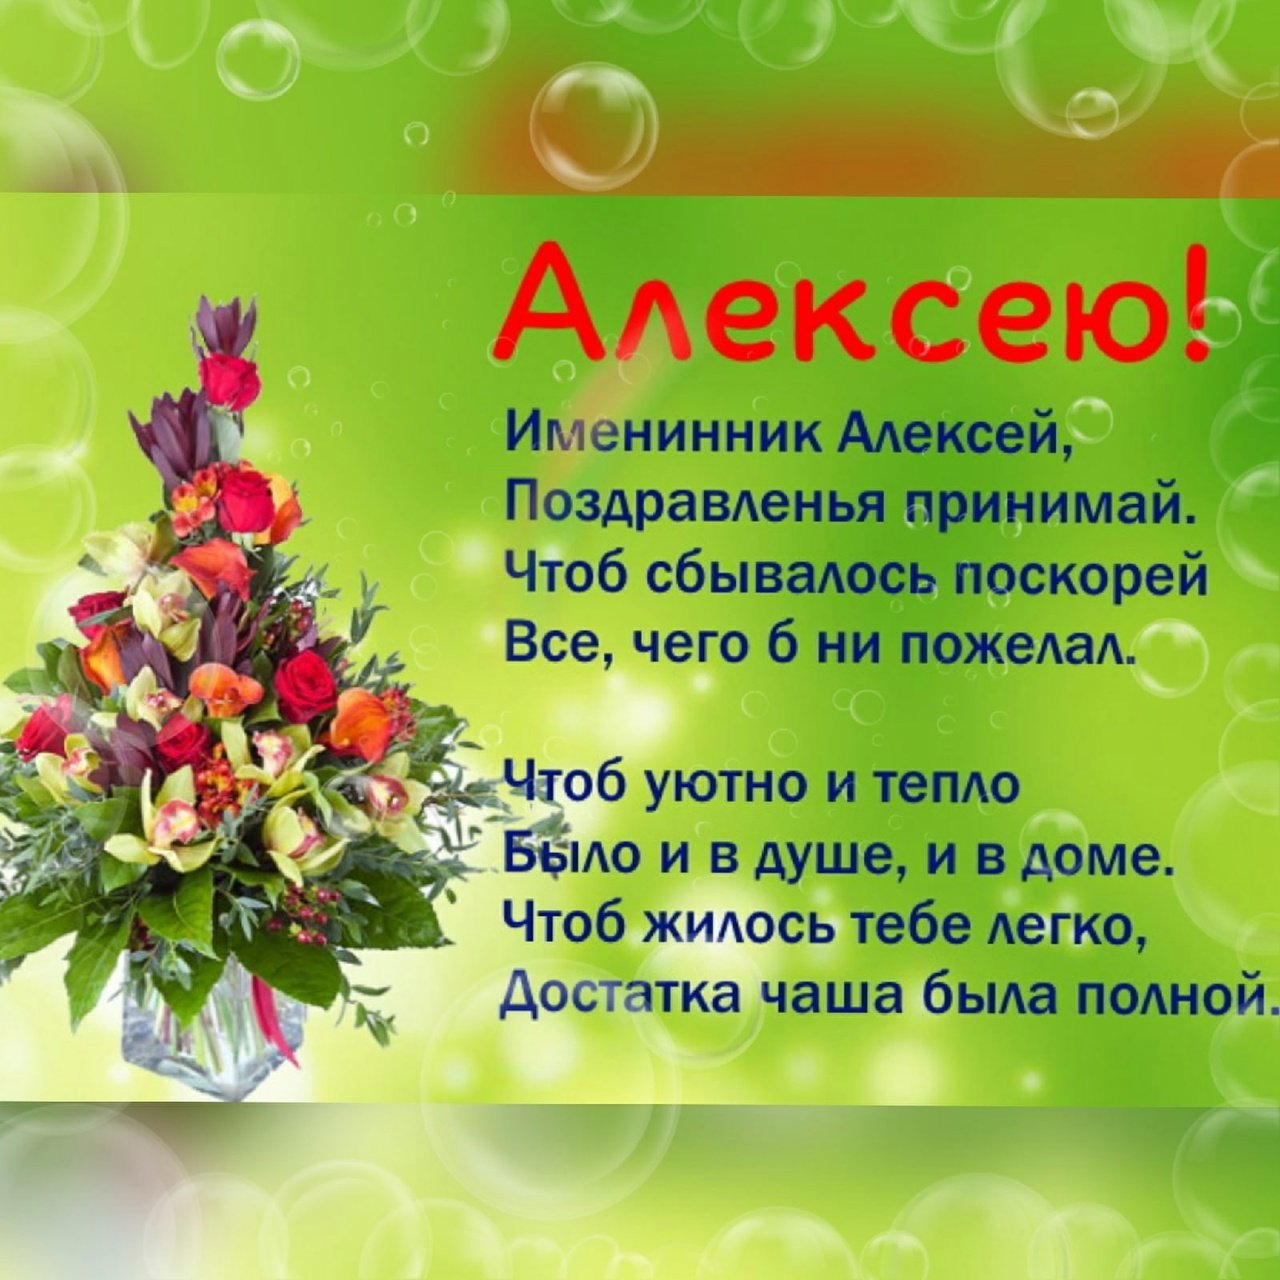 День теплого алексея что за праздник. Поздравление с именинами Алексея. Поздравление с днем ангела Алексея.